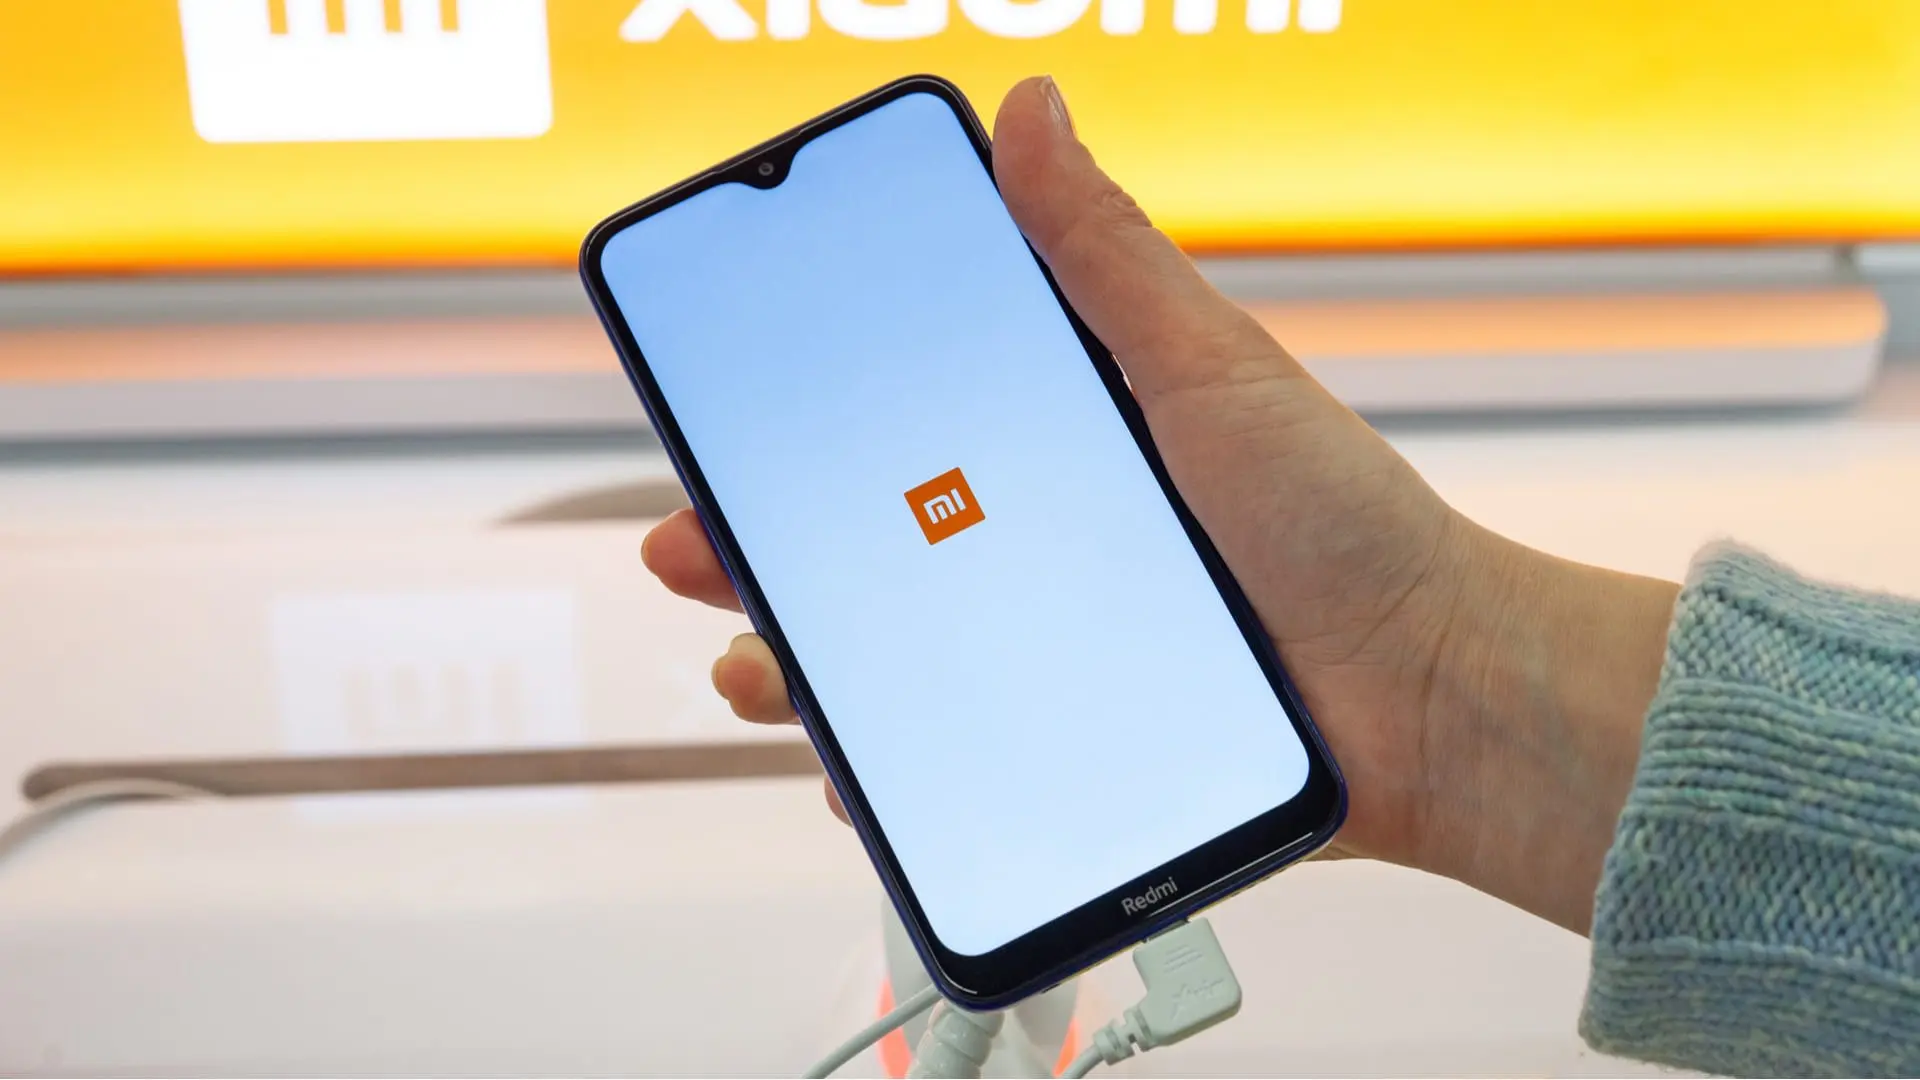 Mão segurando um aparelho da marca de celular Xiaomi, com a logo Mi na tela